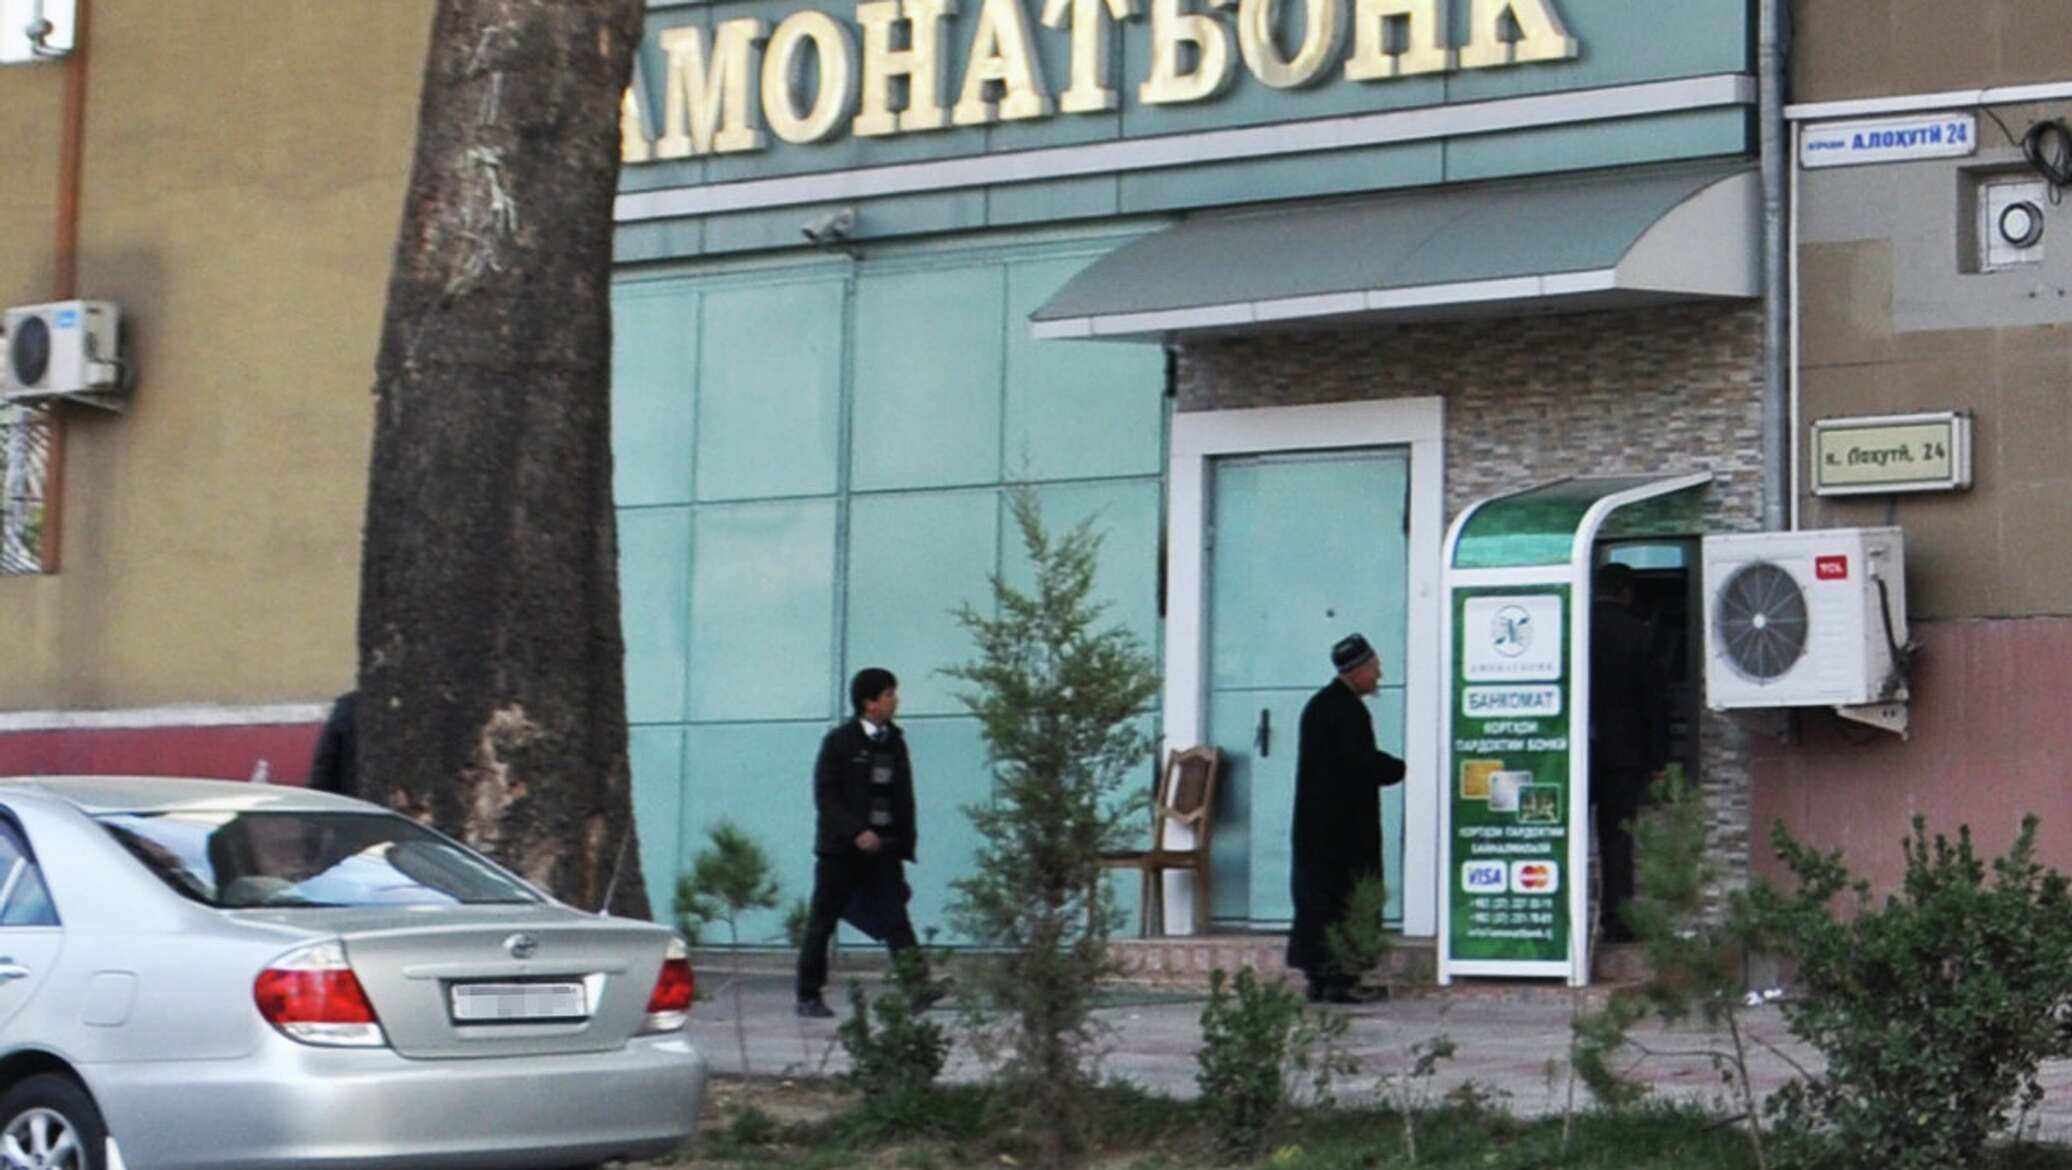 Можно в таджикистане банки. Амонатбанк Душанбе Банкомат. Сбербанк в Таджикистане. В Таджикистане есть Сбербанк. Сбербанк в Таджикистане Душанбе.